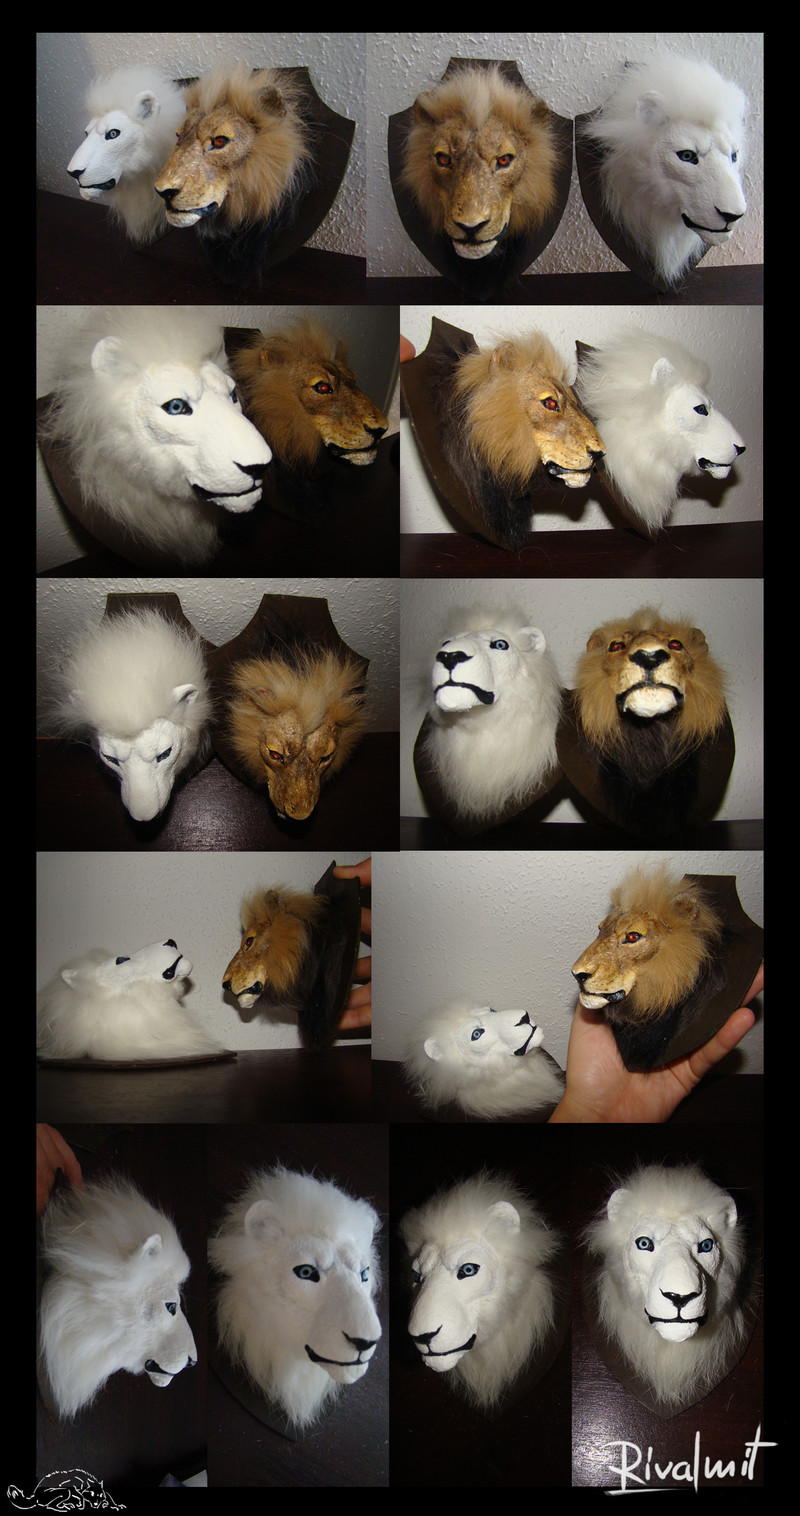 trophy miniature lion sculpture fur Sculptures Miniature Lion head trophy Sculptures